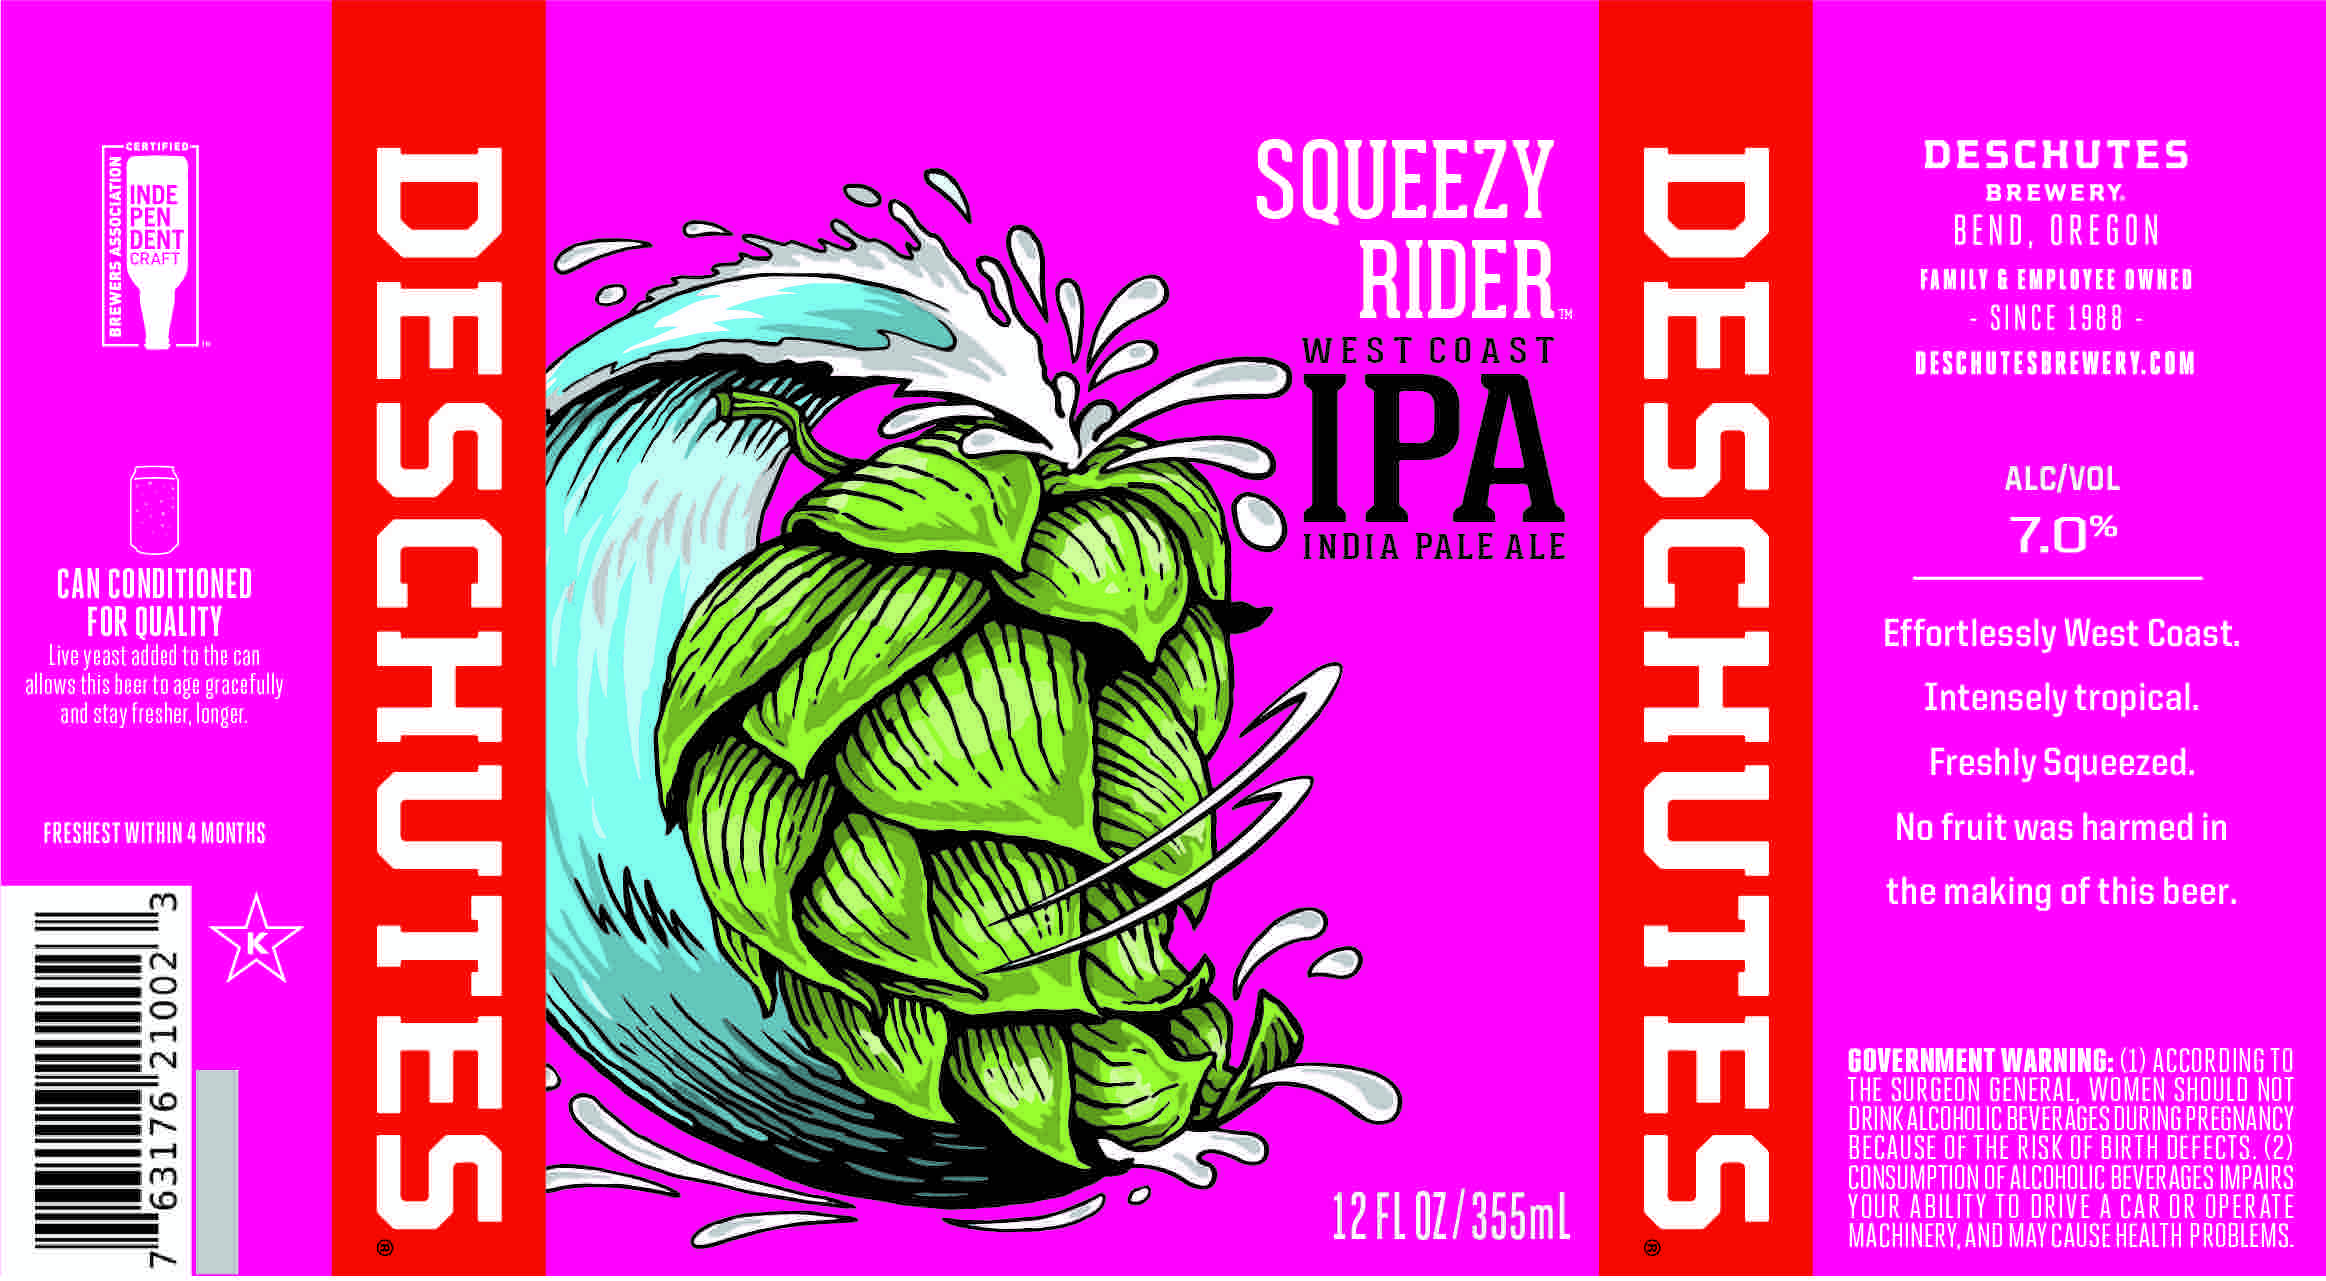 Deschutes-Brewery-Squeezy-Rider-IPA-Label.jpg